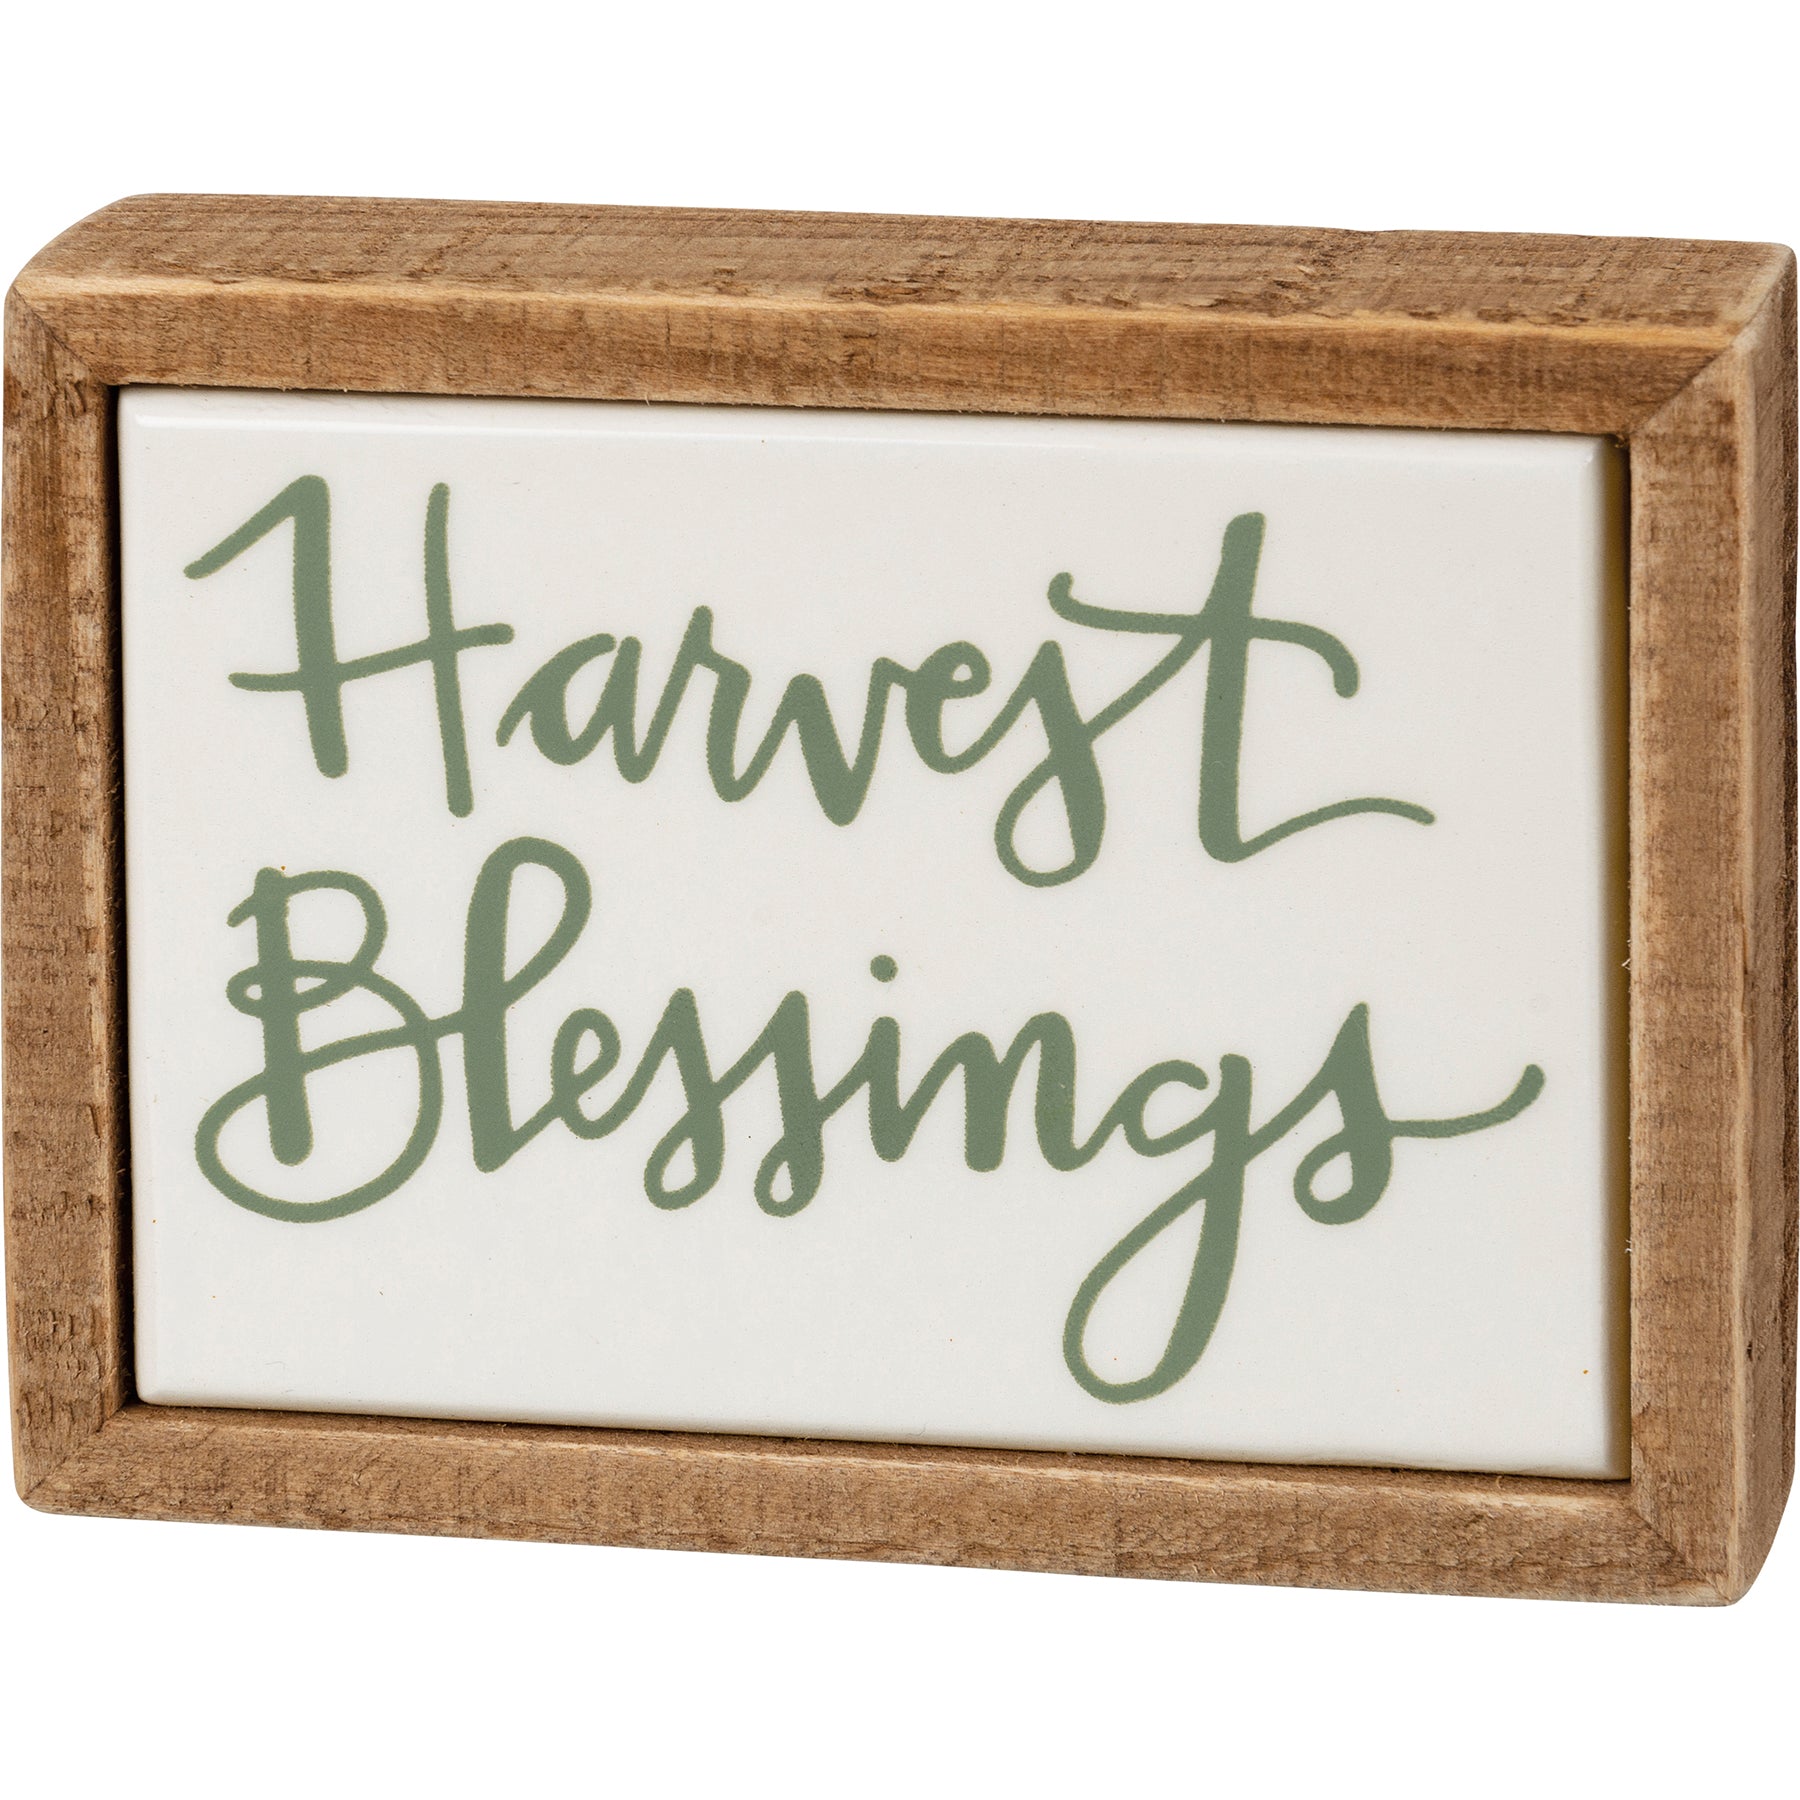 Harvest Blessings Mini Block Sign